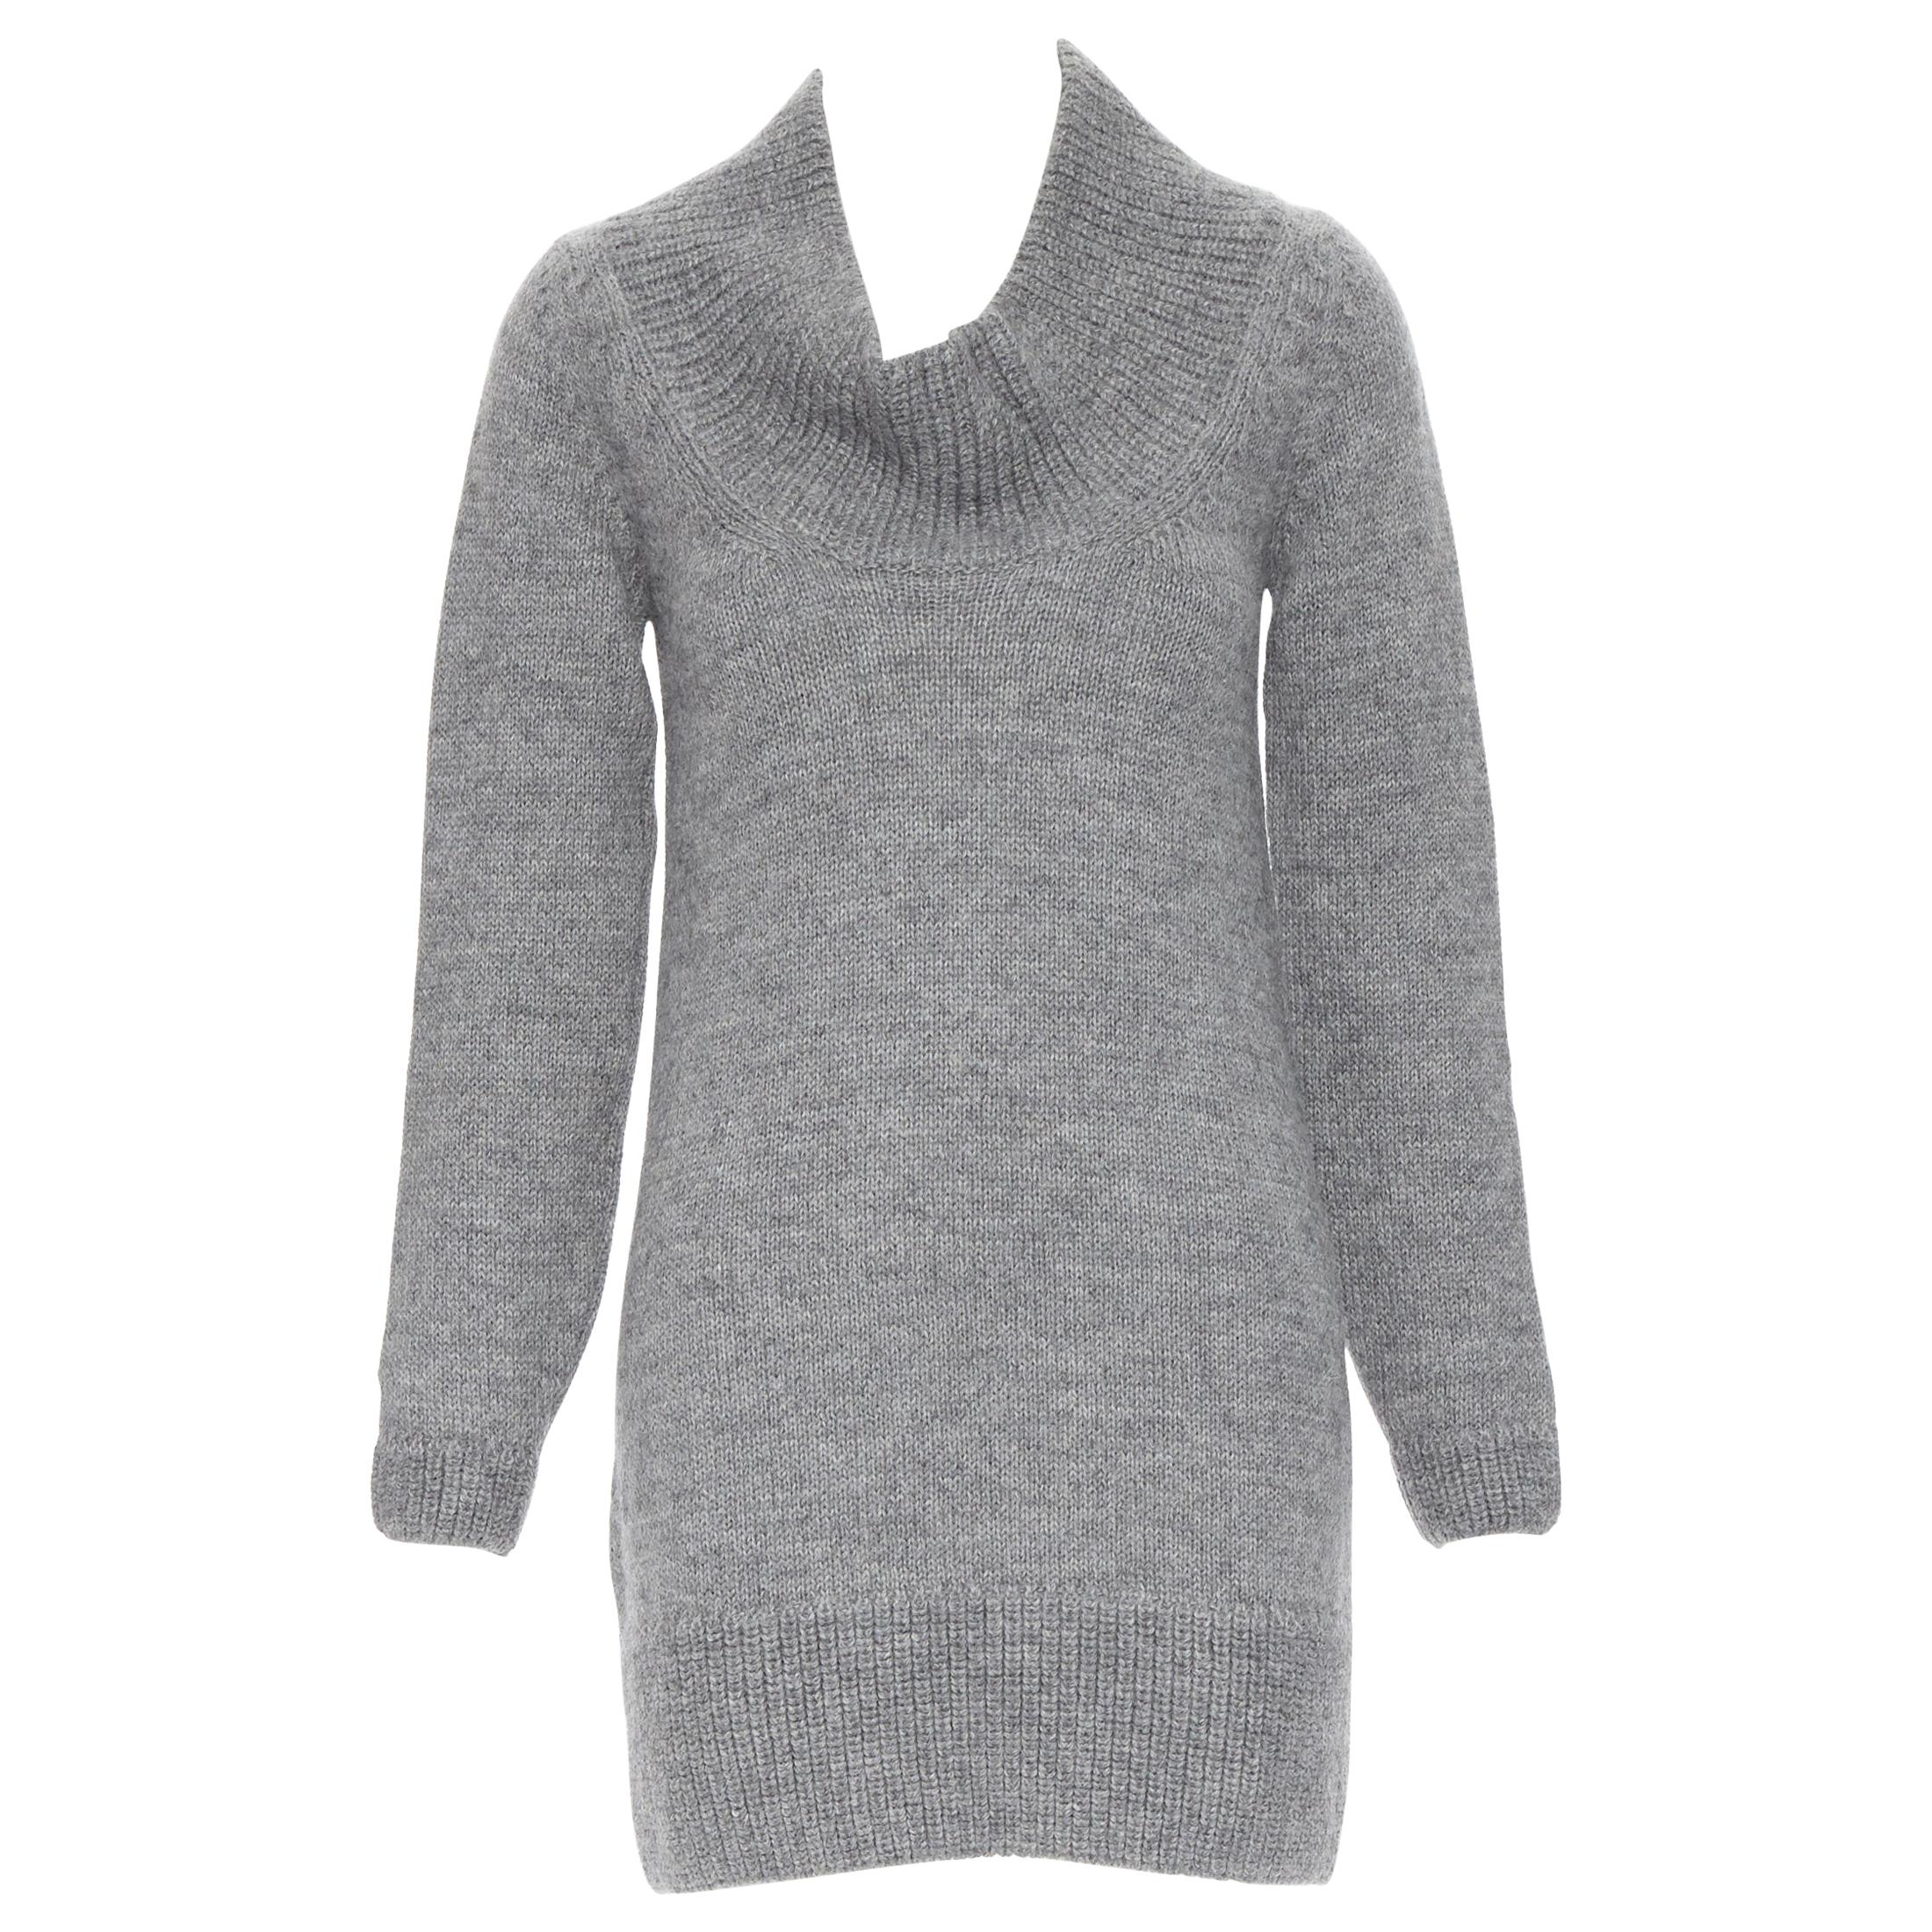 CHLOE alpaca wool grey open cowl neck long sleeve sweater dress XS